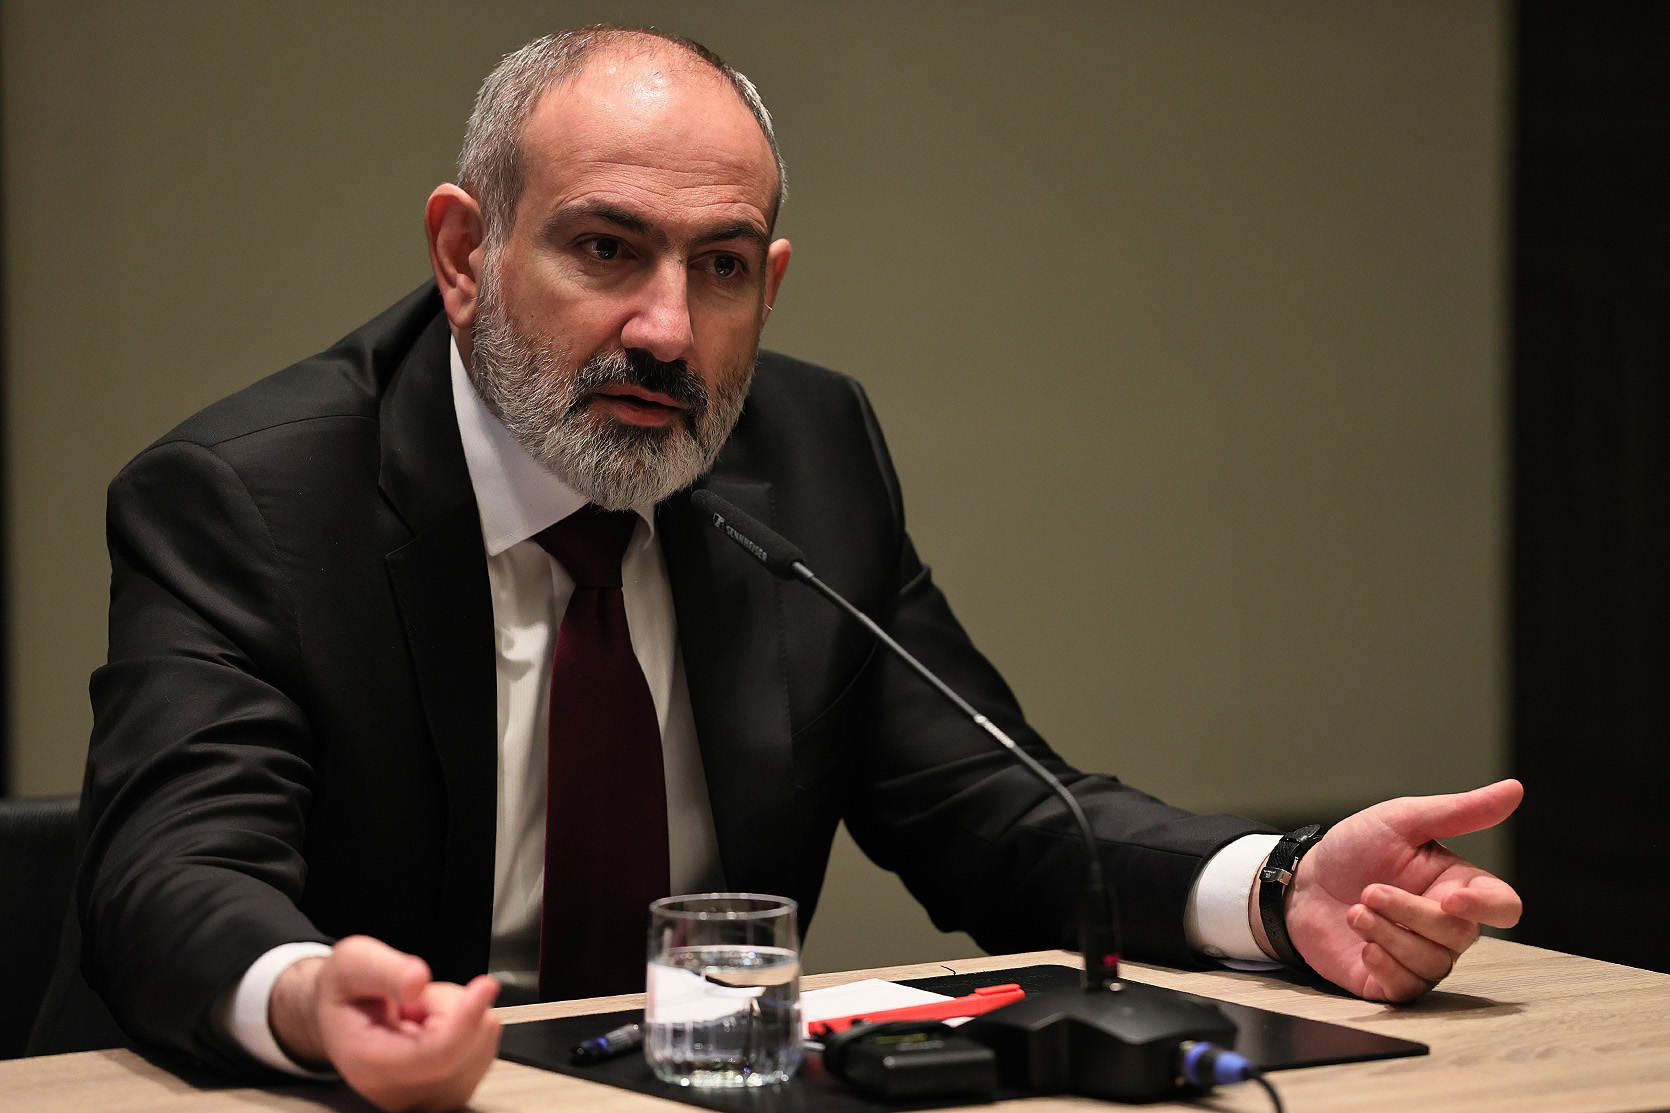 Ադրբեջանը իրադրությունը զարգացնում է դեպի նոր էսկալացիա.հիմա էլ նոր մեղադրանք է մոգոնել ընդդեմ ՀՀ-ի